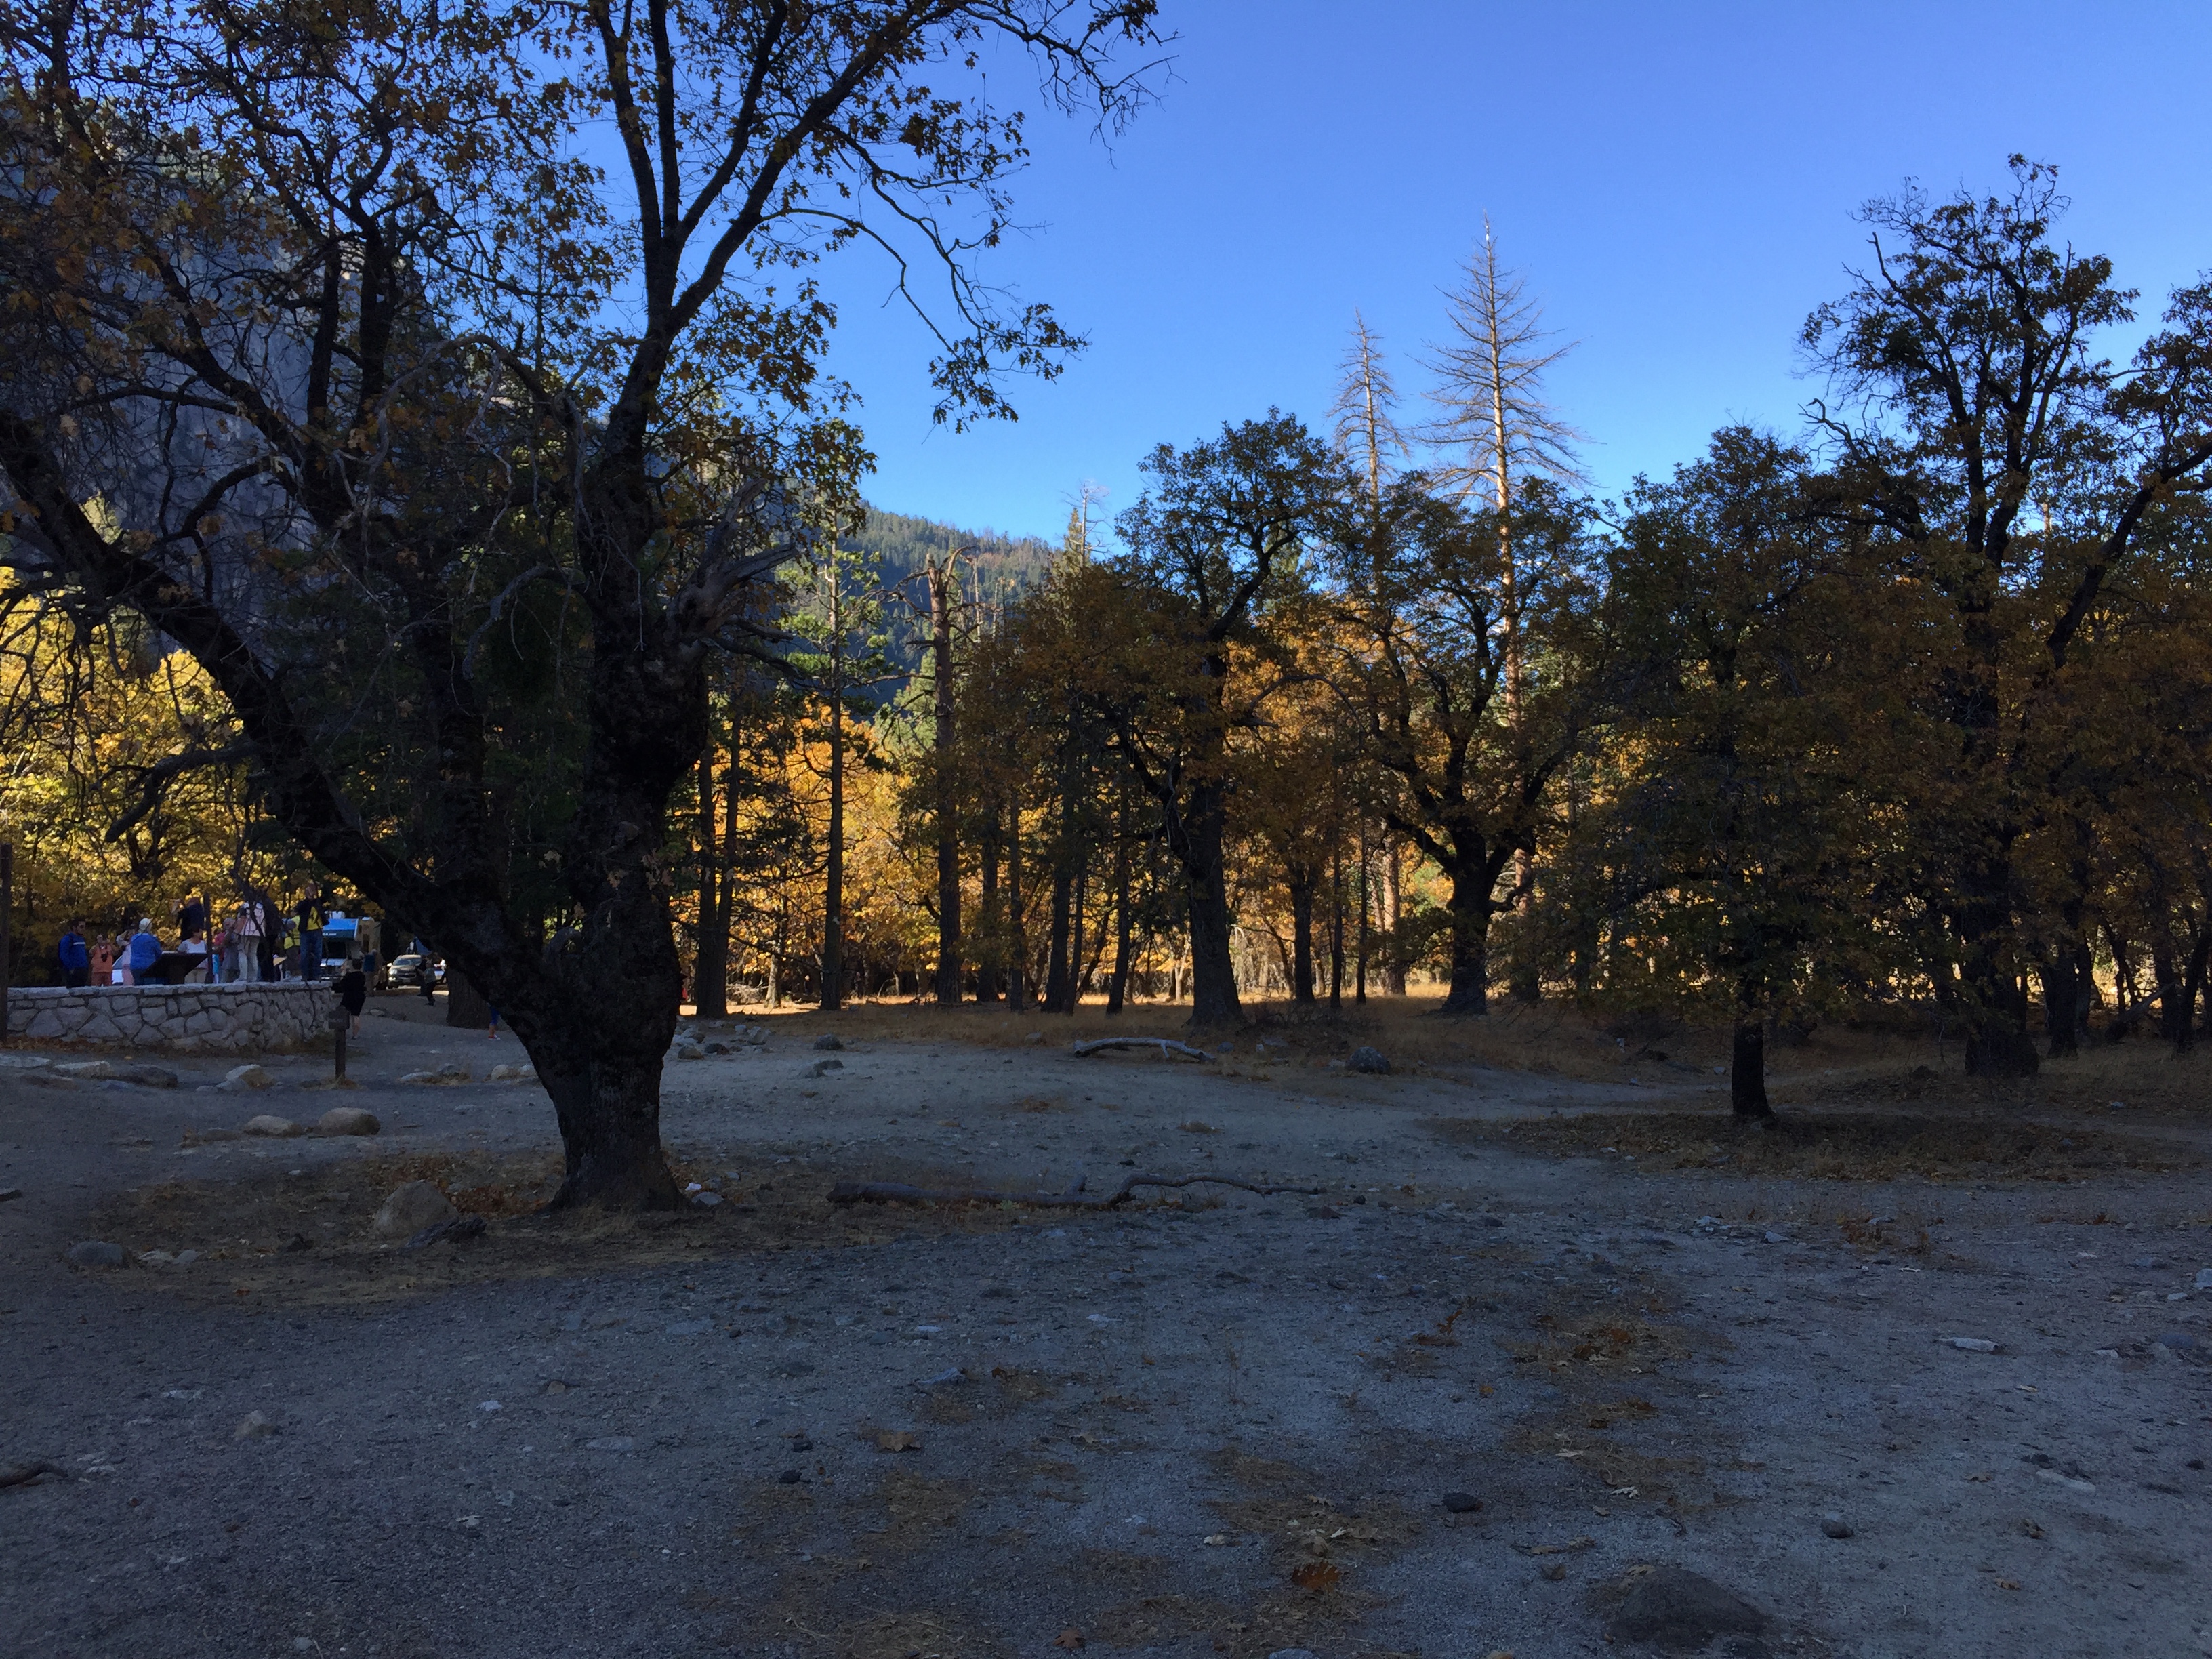 Yosemite in fall